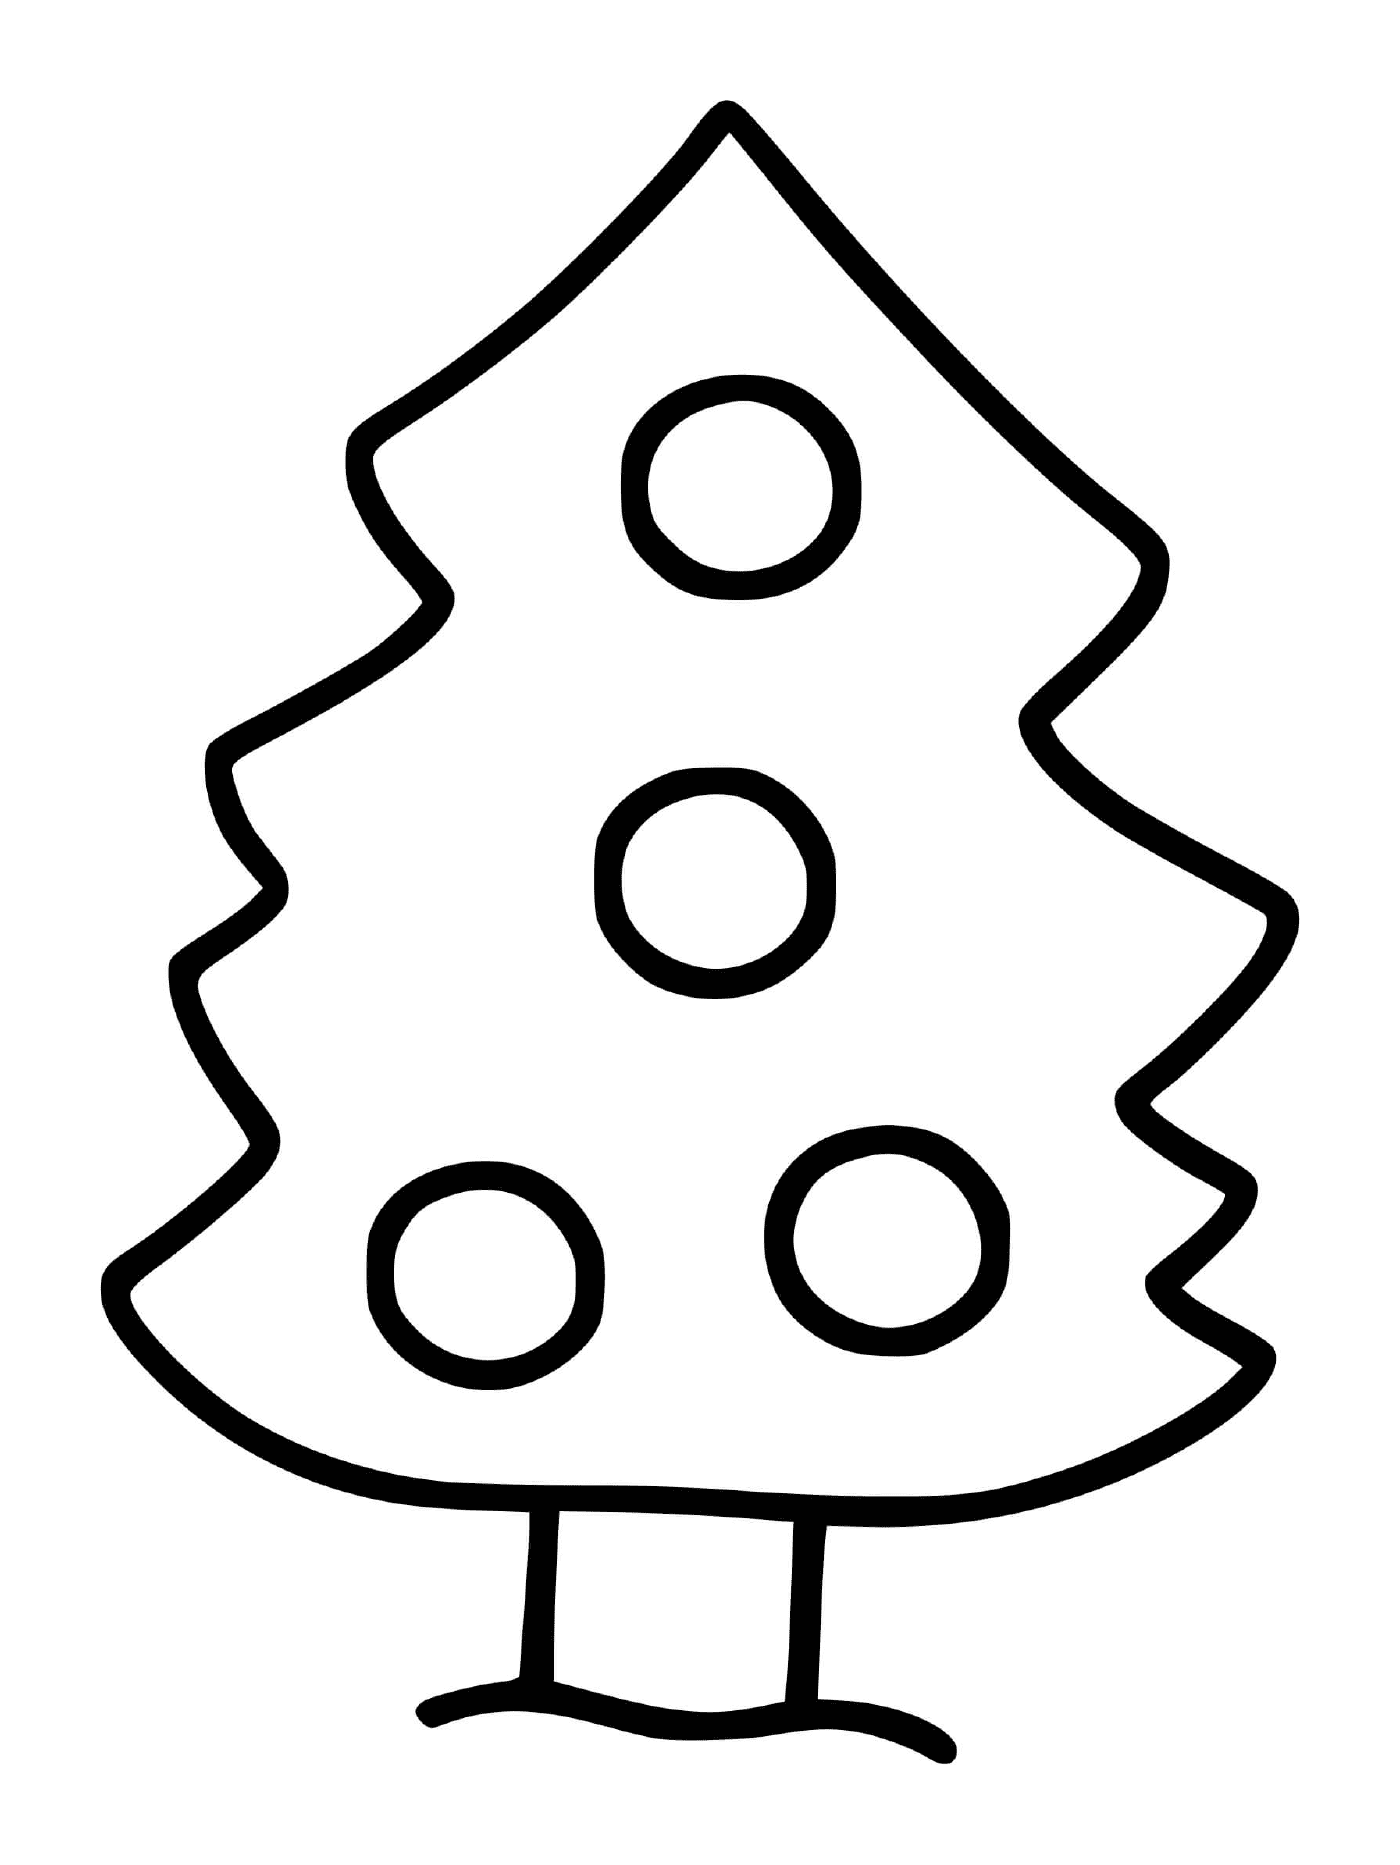  Árbol de Navidad muy simple y fácil para los niños pequeños 